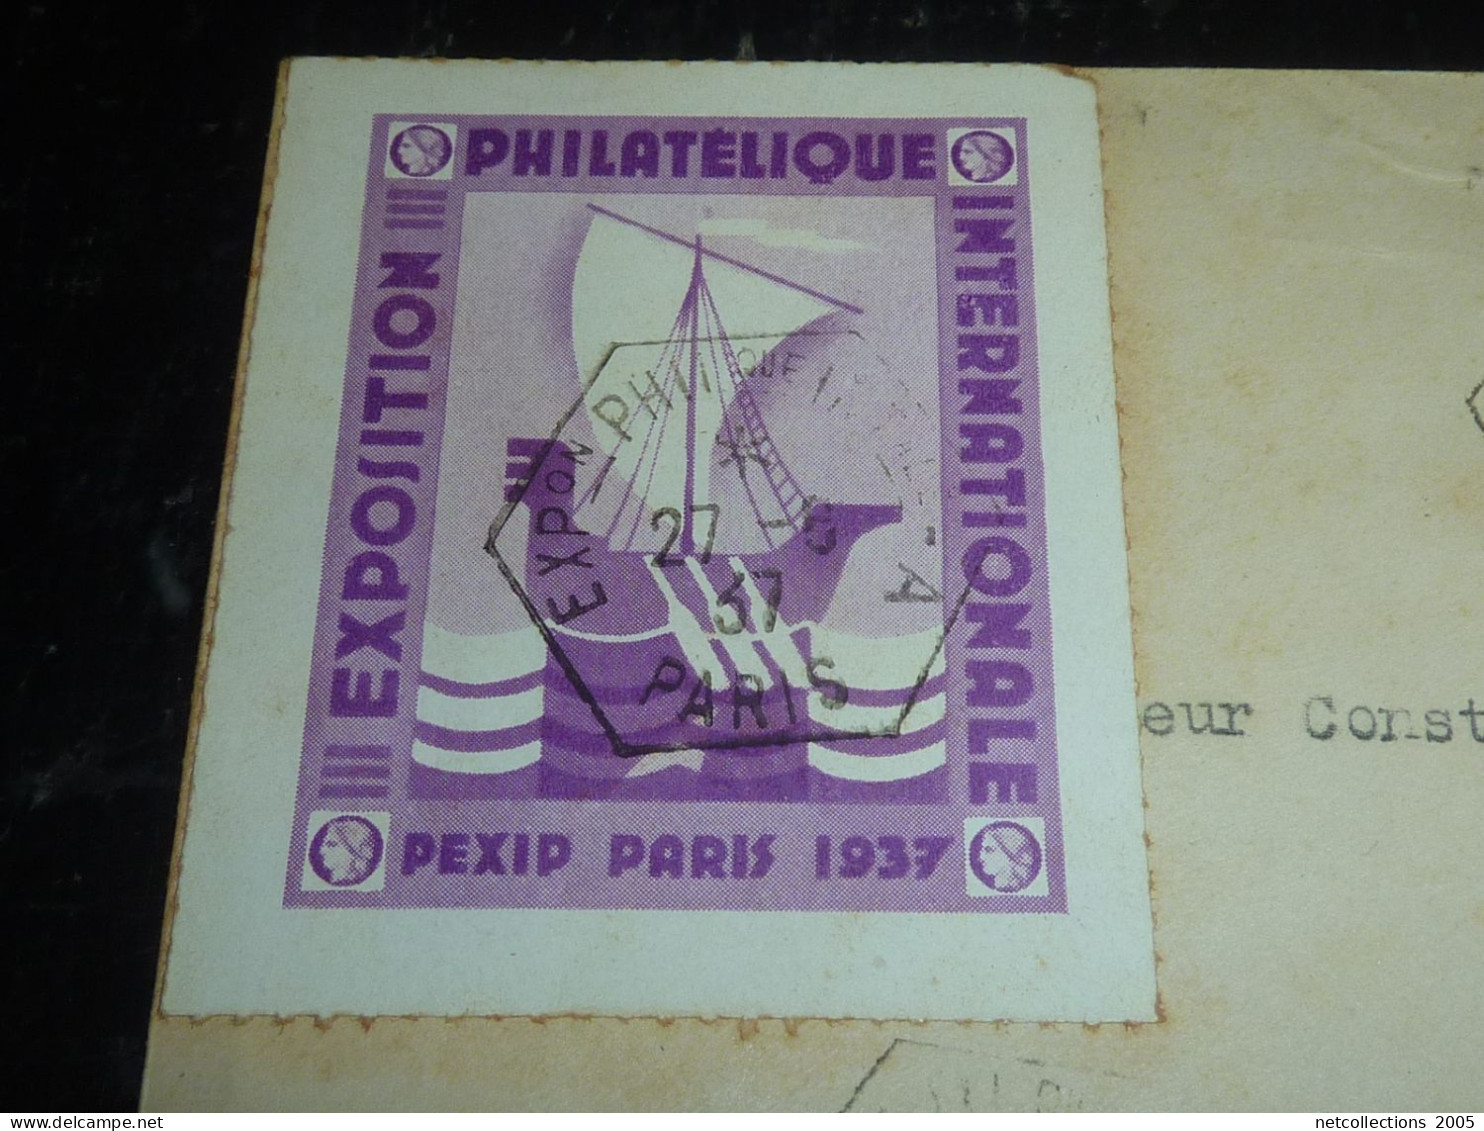 EXPOSITION PHILATELIQUE PEXIP PARIS 1937 - CACHET HEXAGONAL + TIMBRE N°329 + VIGNETTE (20/09) - Expositions Philatéliques